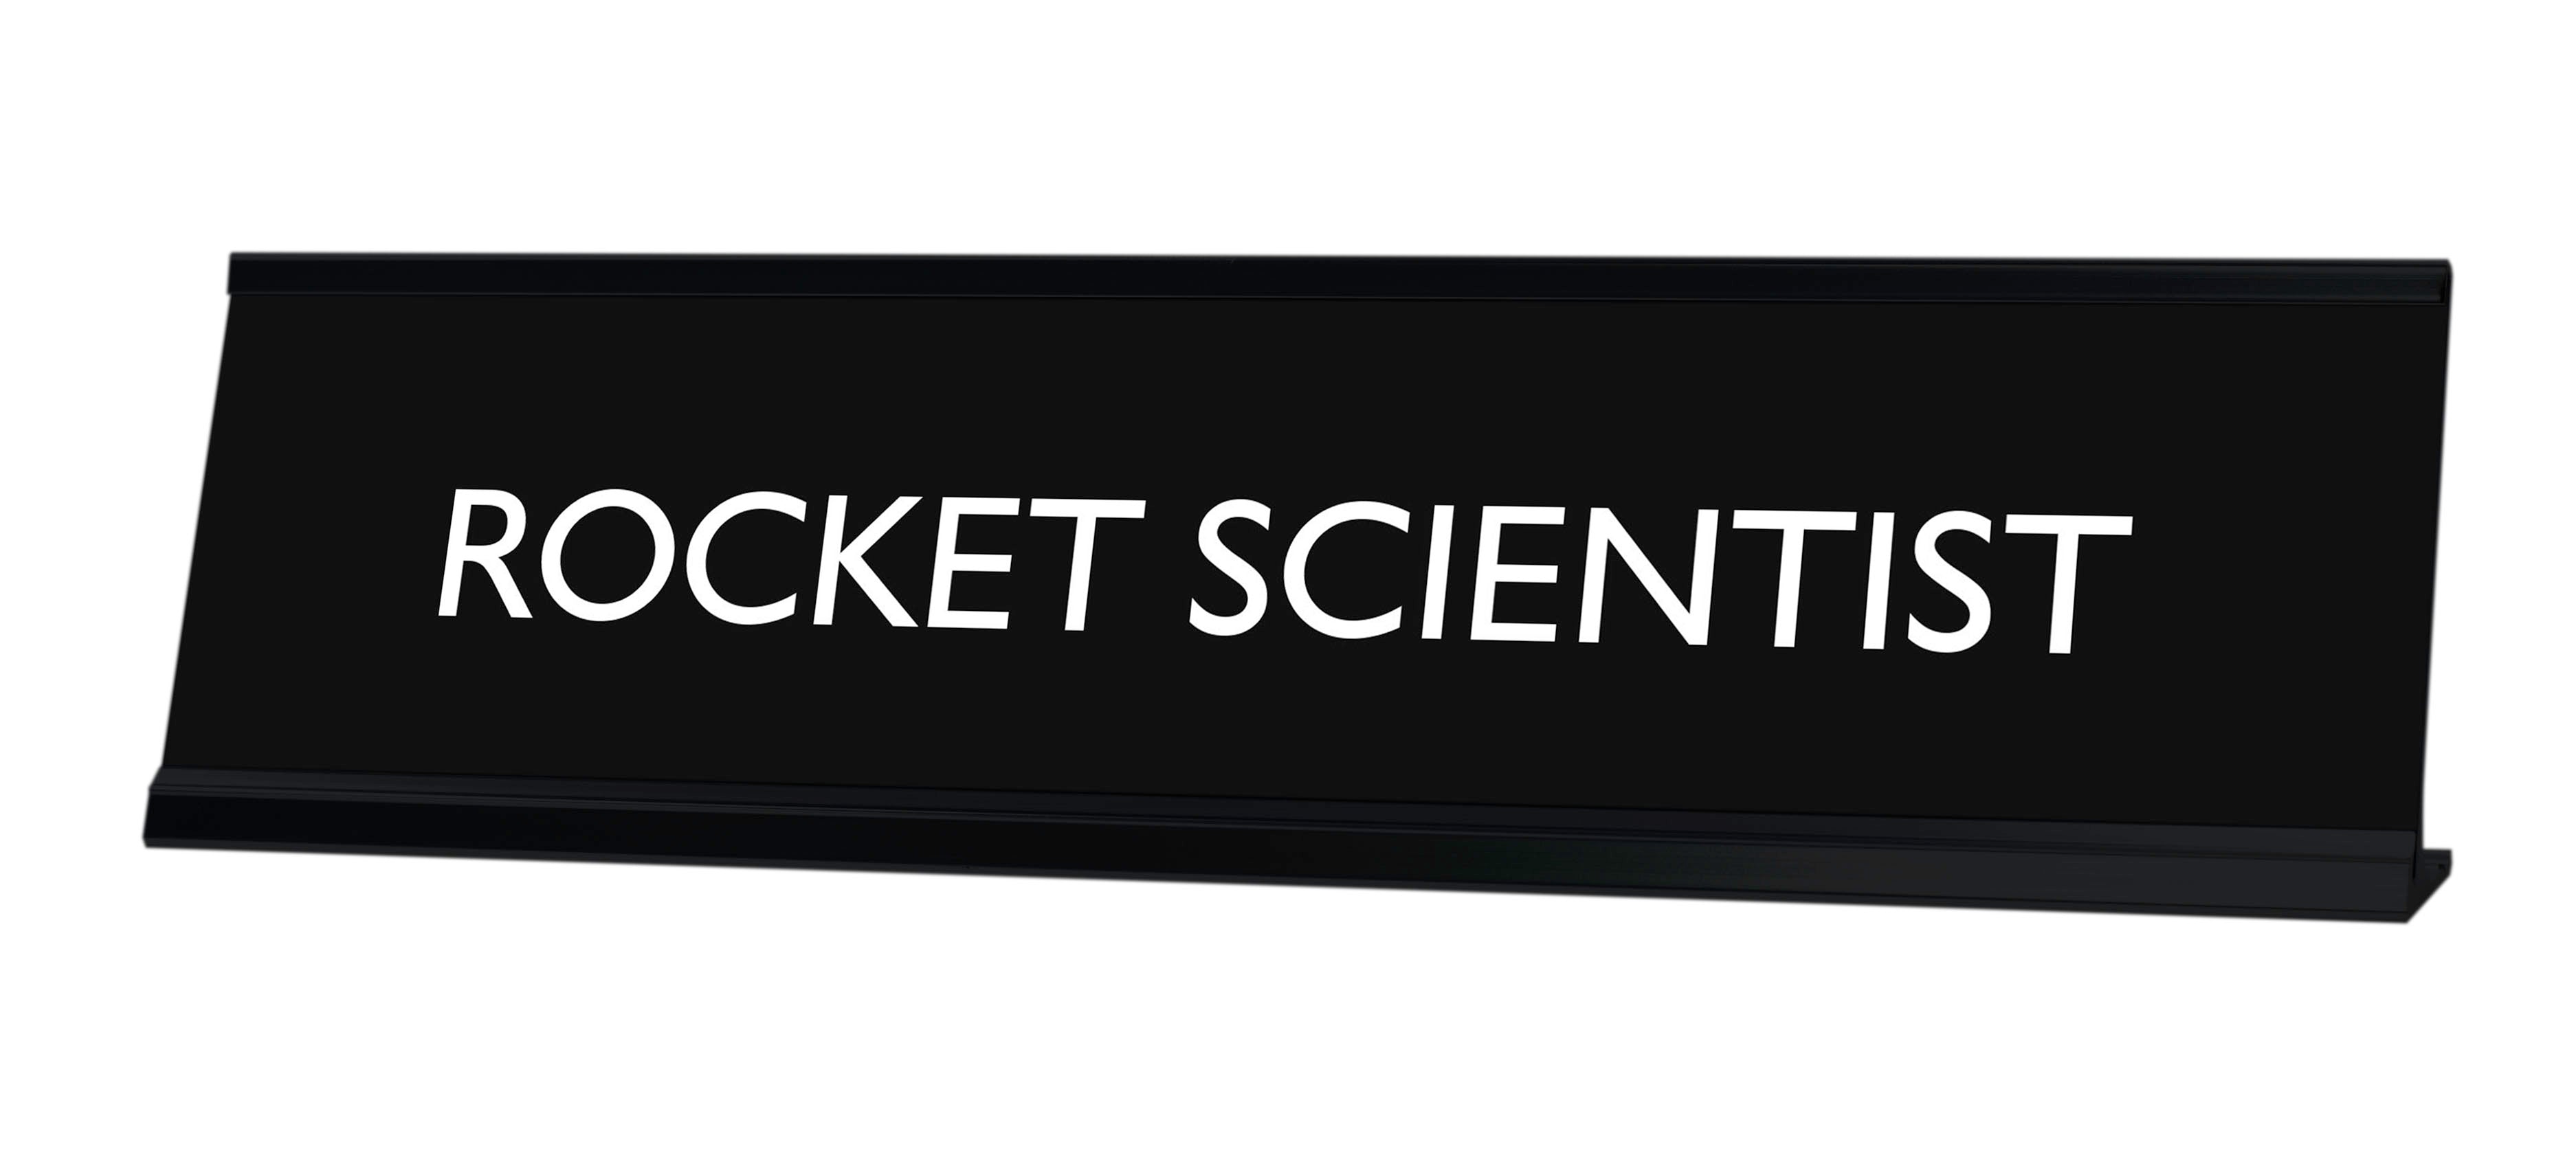 ROCKET SCIENTIST Novelty Desk Sign